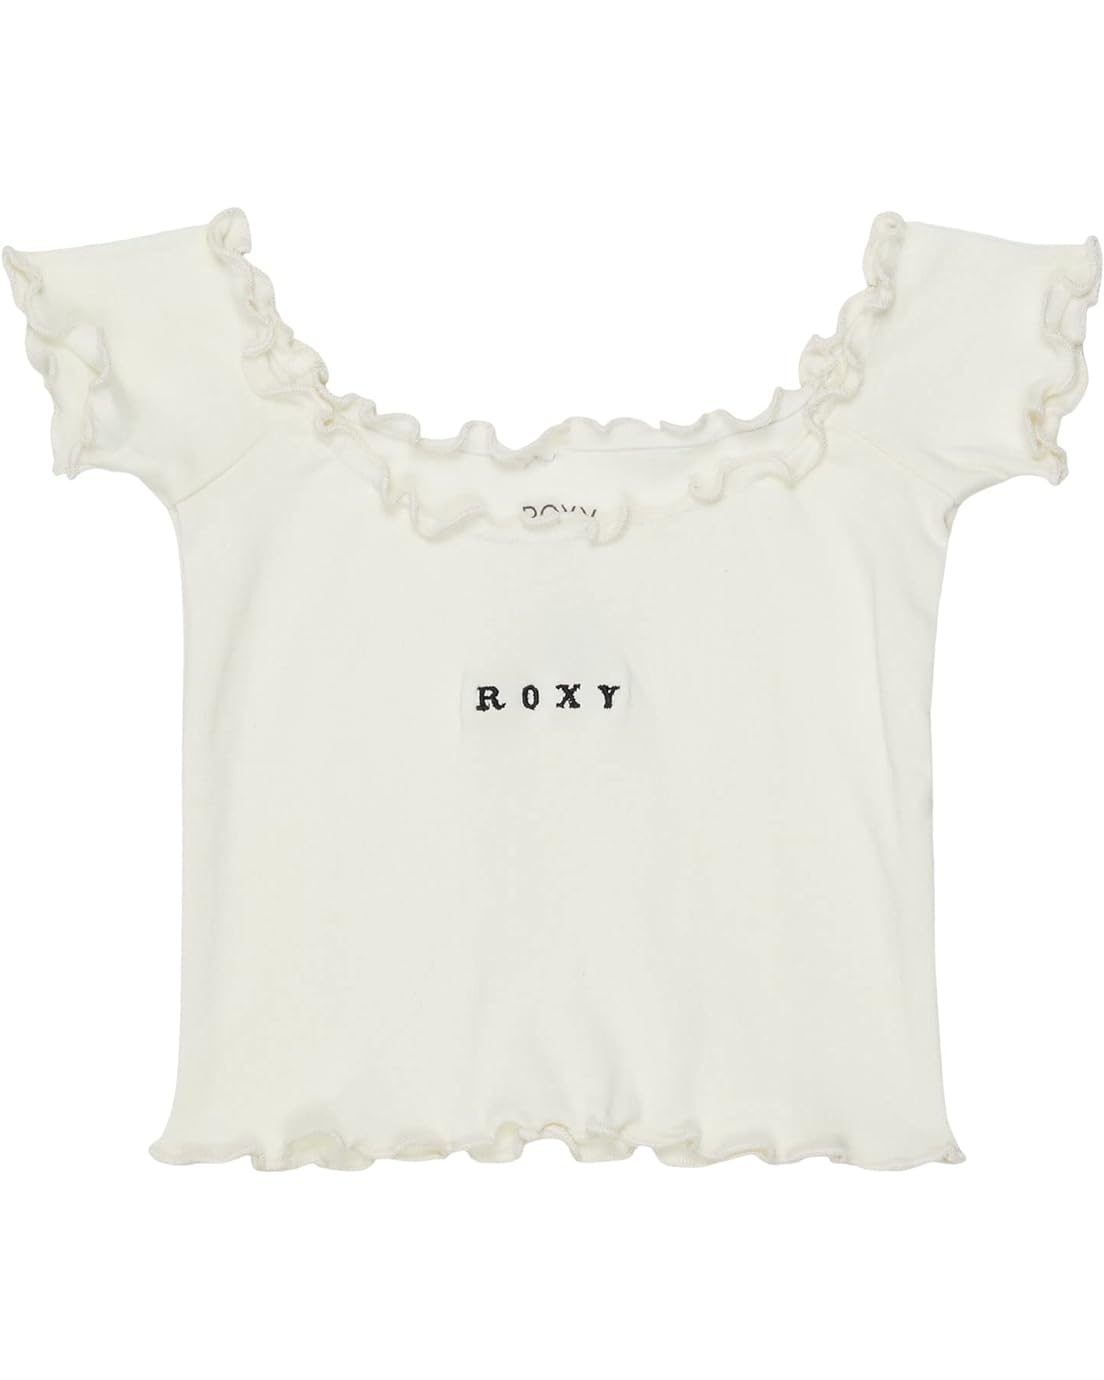 록시 Roxy Kids Beautiful Dream T-Shirt (Little Kidsu002FBig Kids)